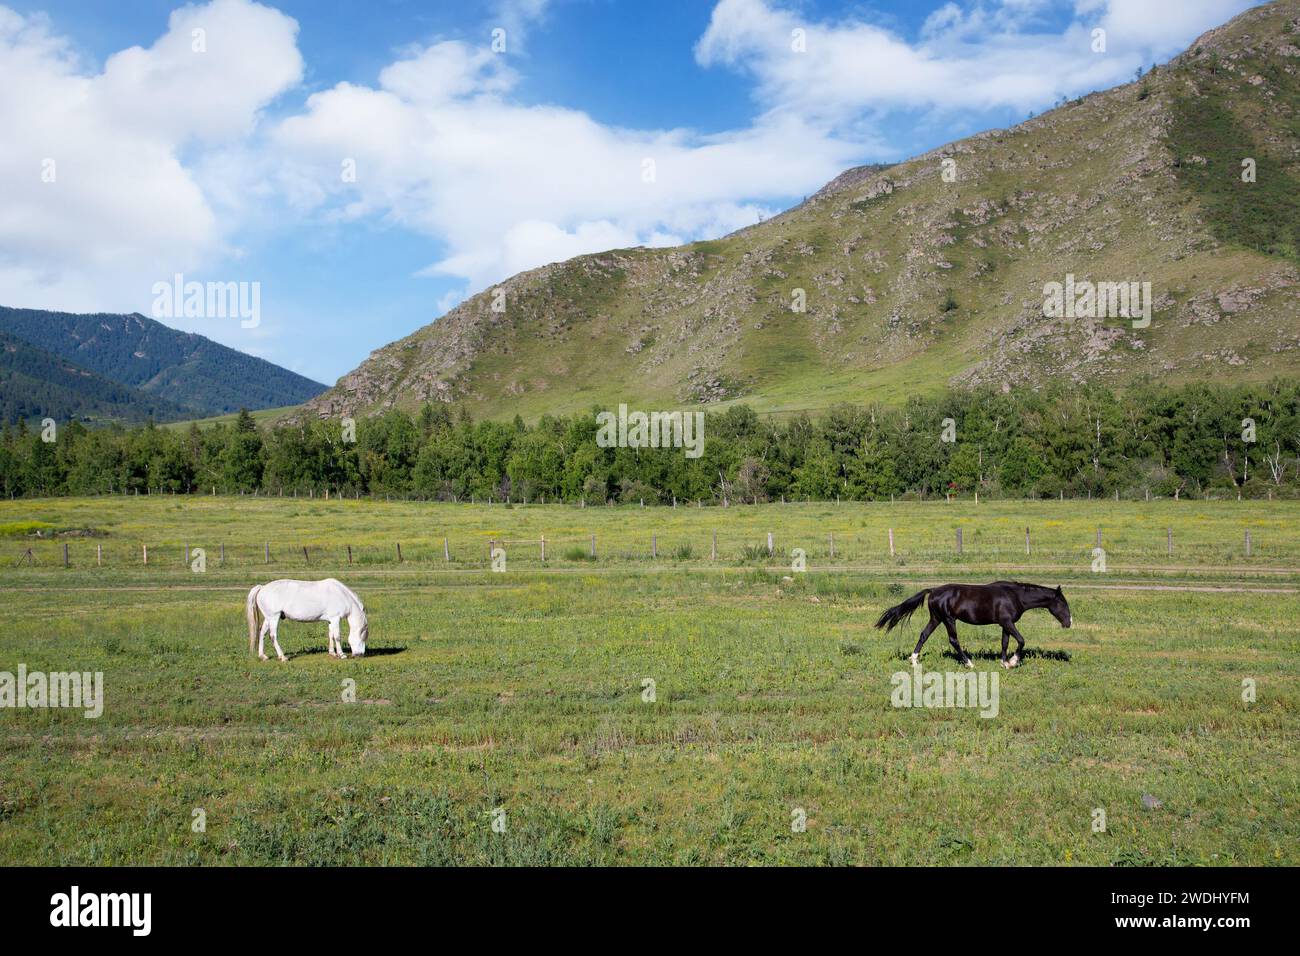 Les chevaux paissent dans une prairie entourée de montagnes. Paysage dans la République de l'Altaï, Russie Banque D'Images